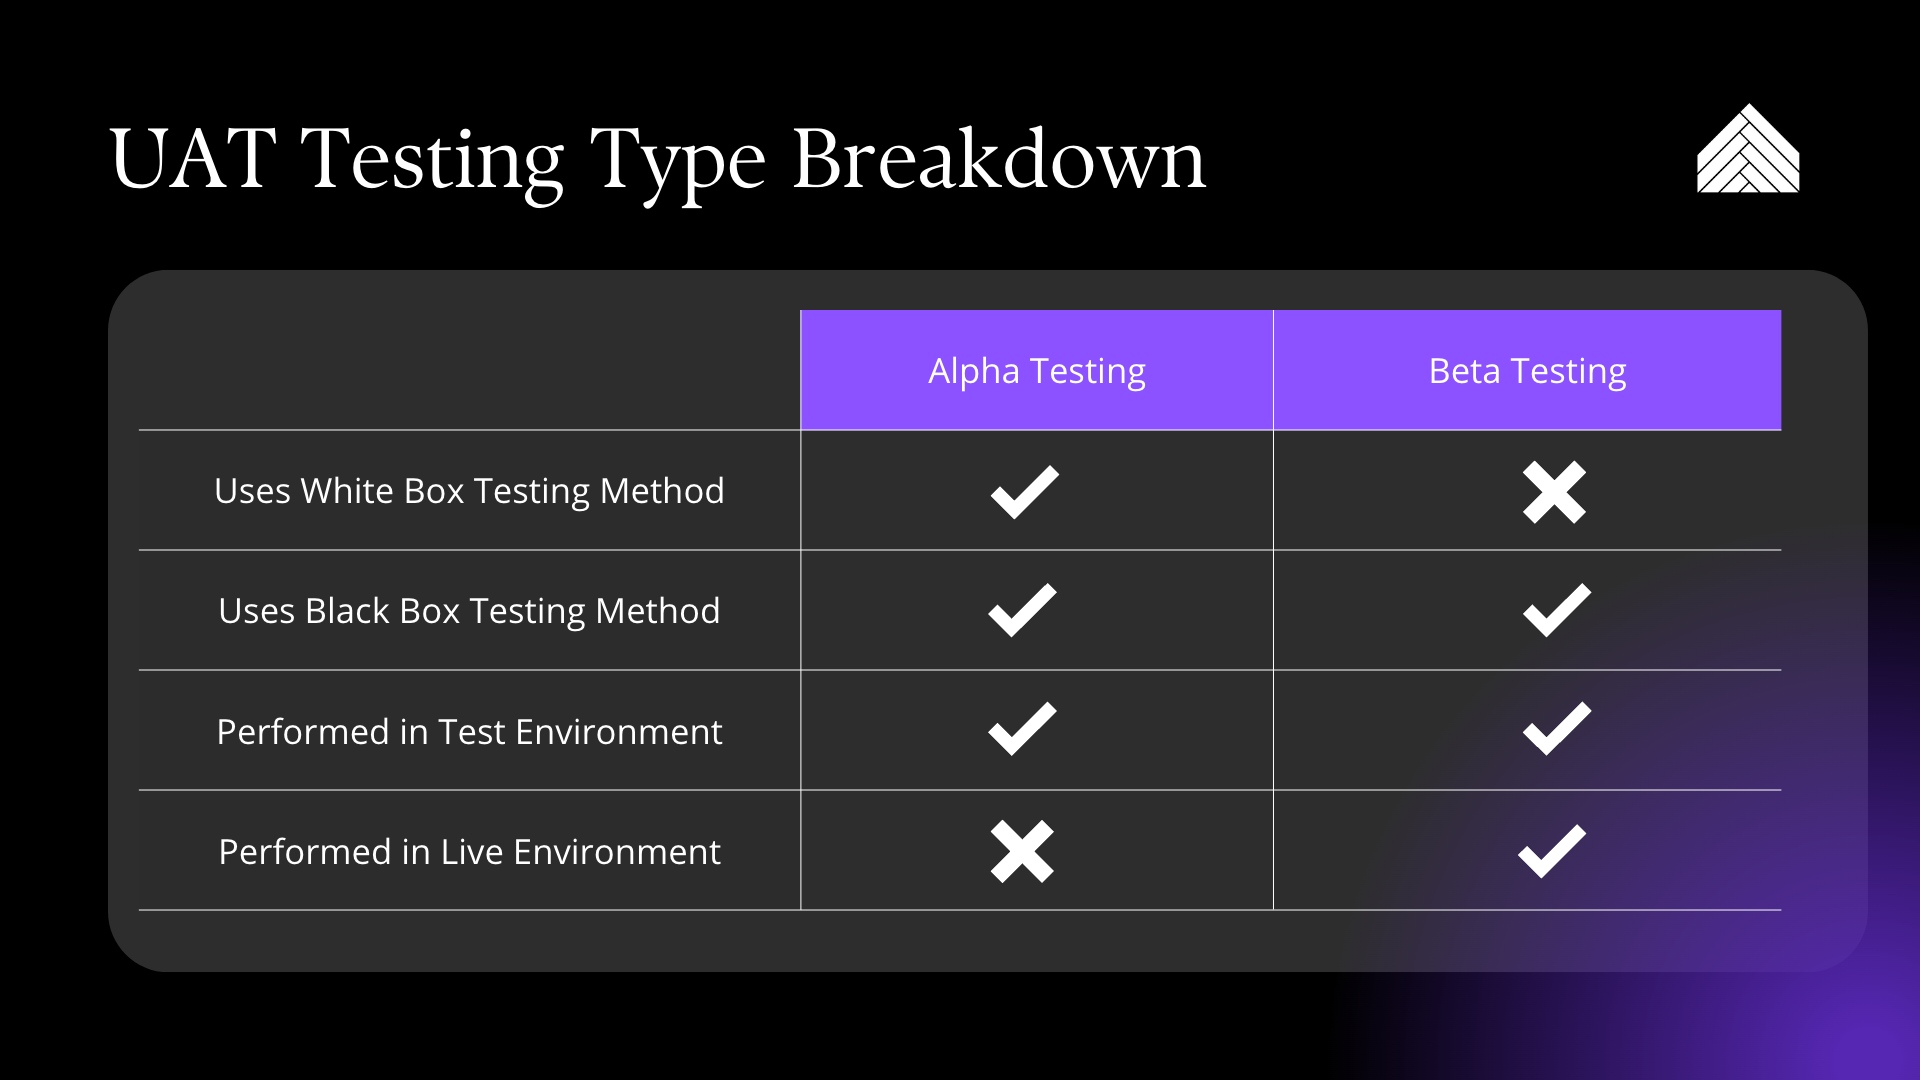 UAT testing type breakdown